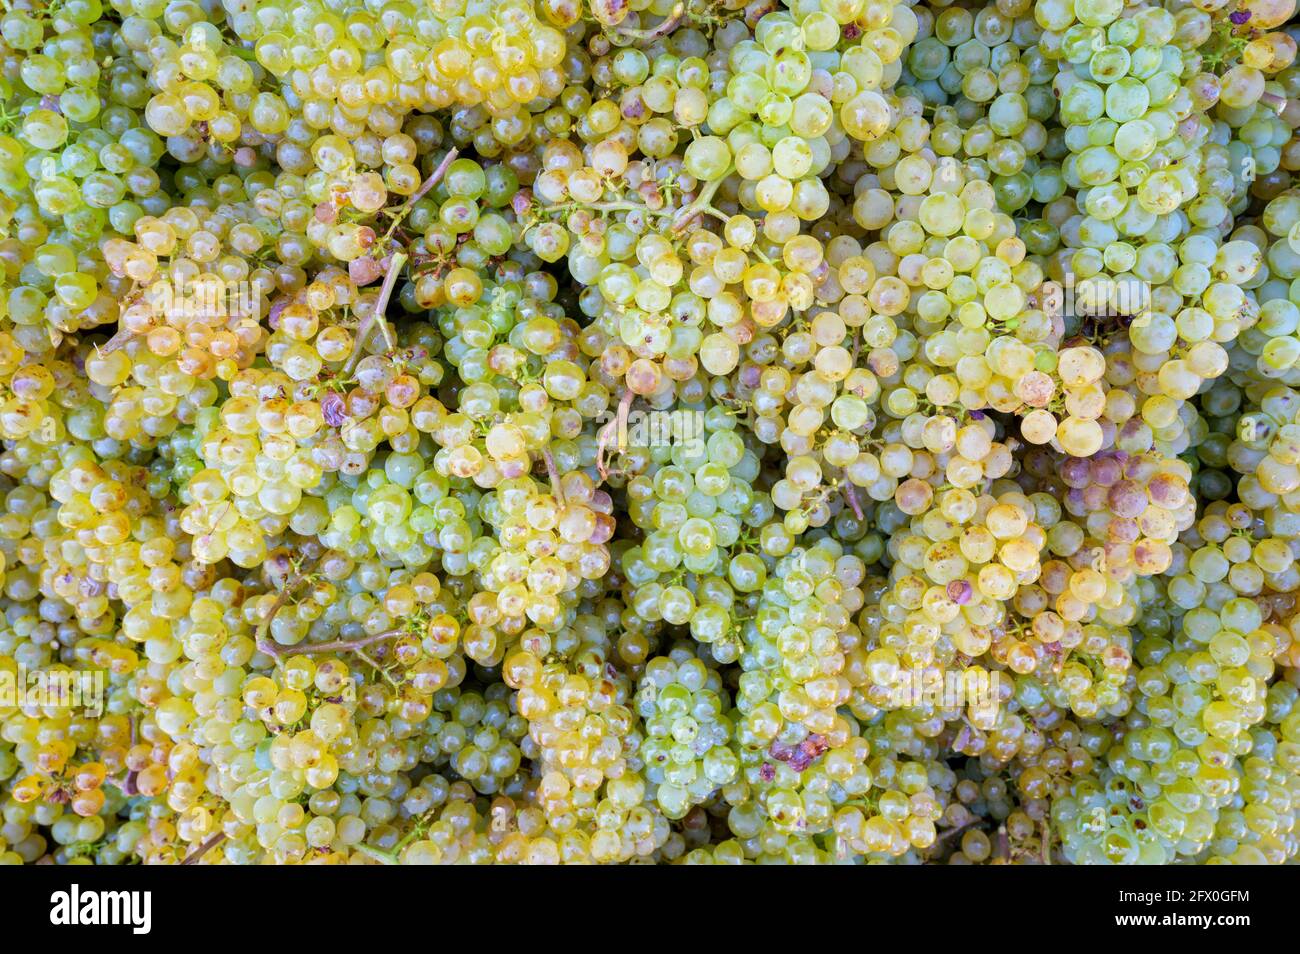 Weiße Trauben und Weinreben zur Weinbereitung, Neuweier, Schwarzwald, Deutschland. Stockfoto